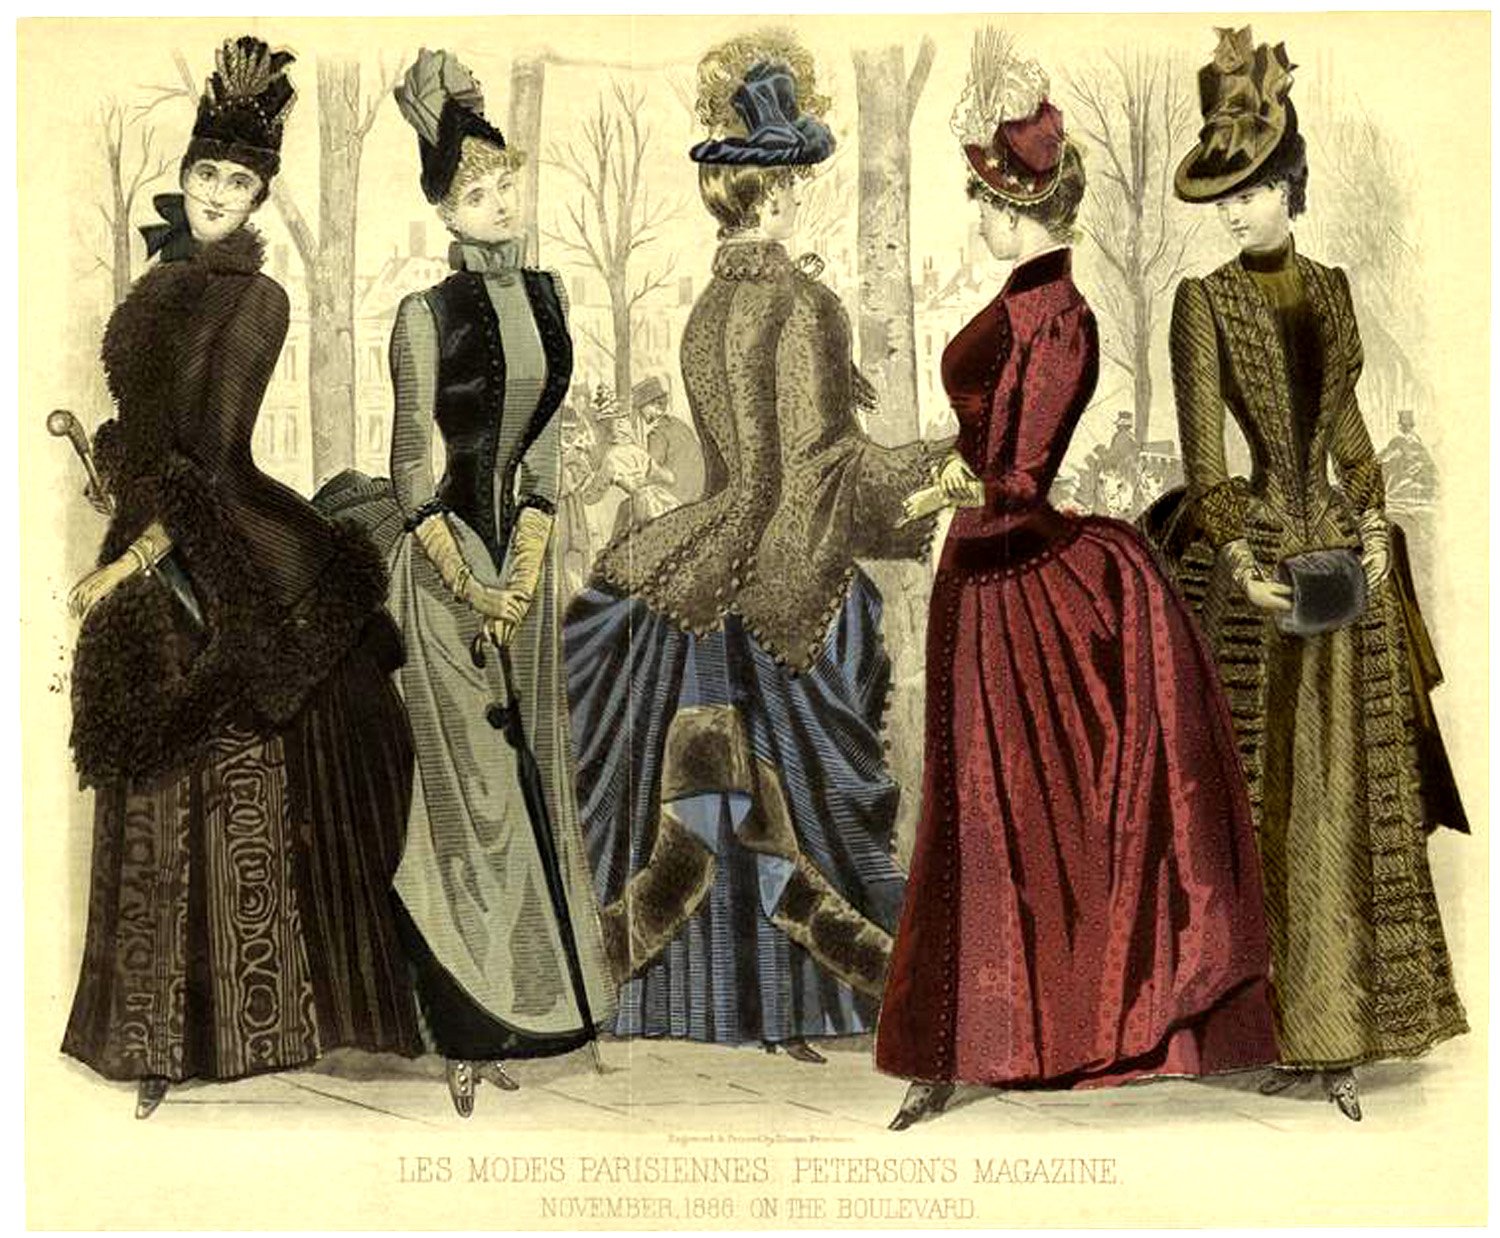 Платья середины 20 века